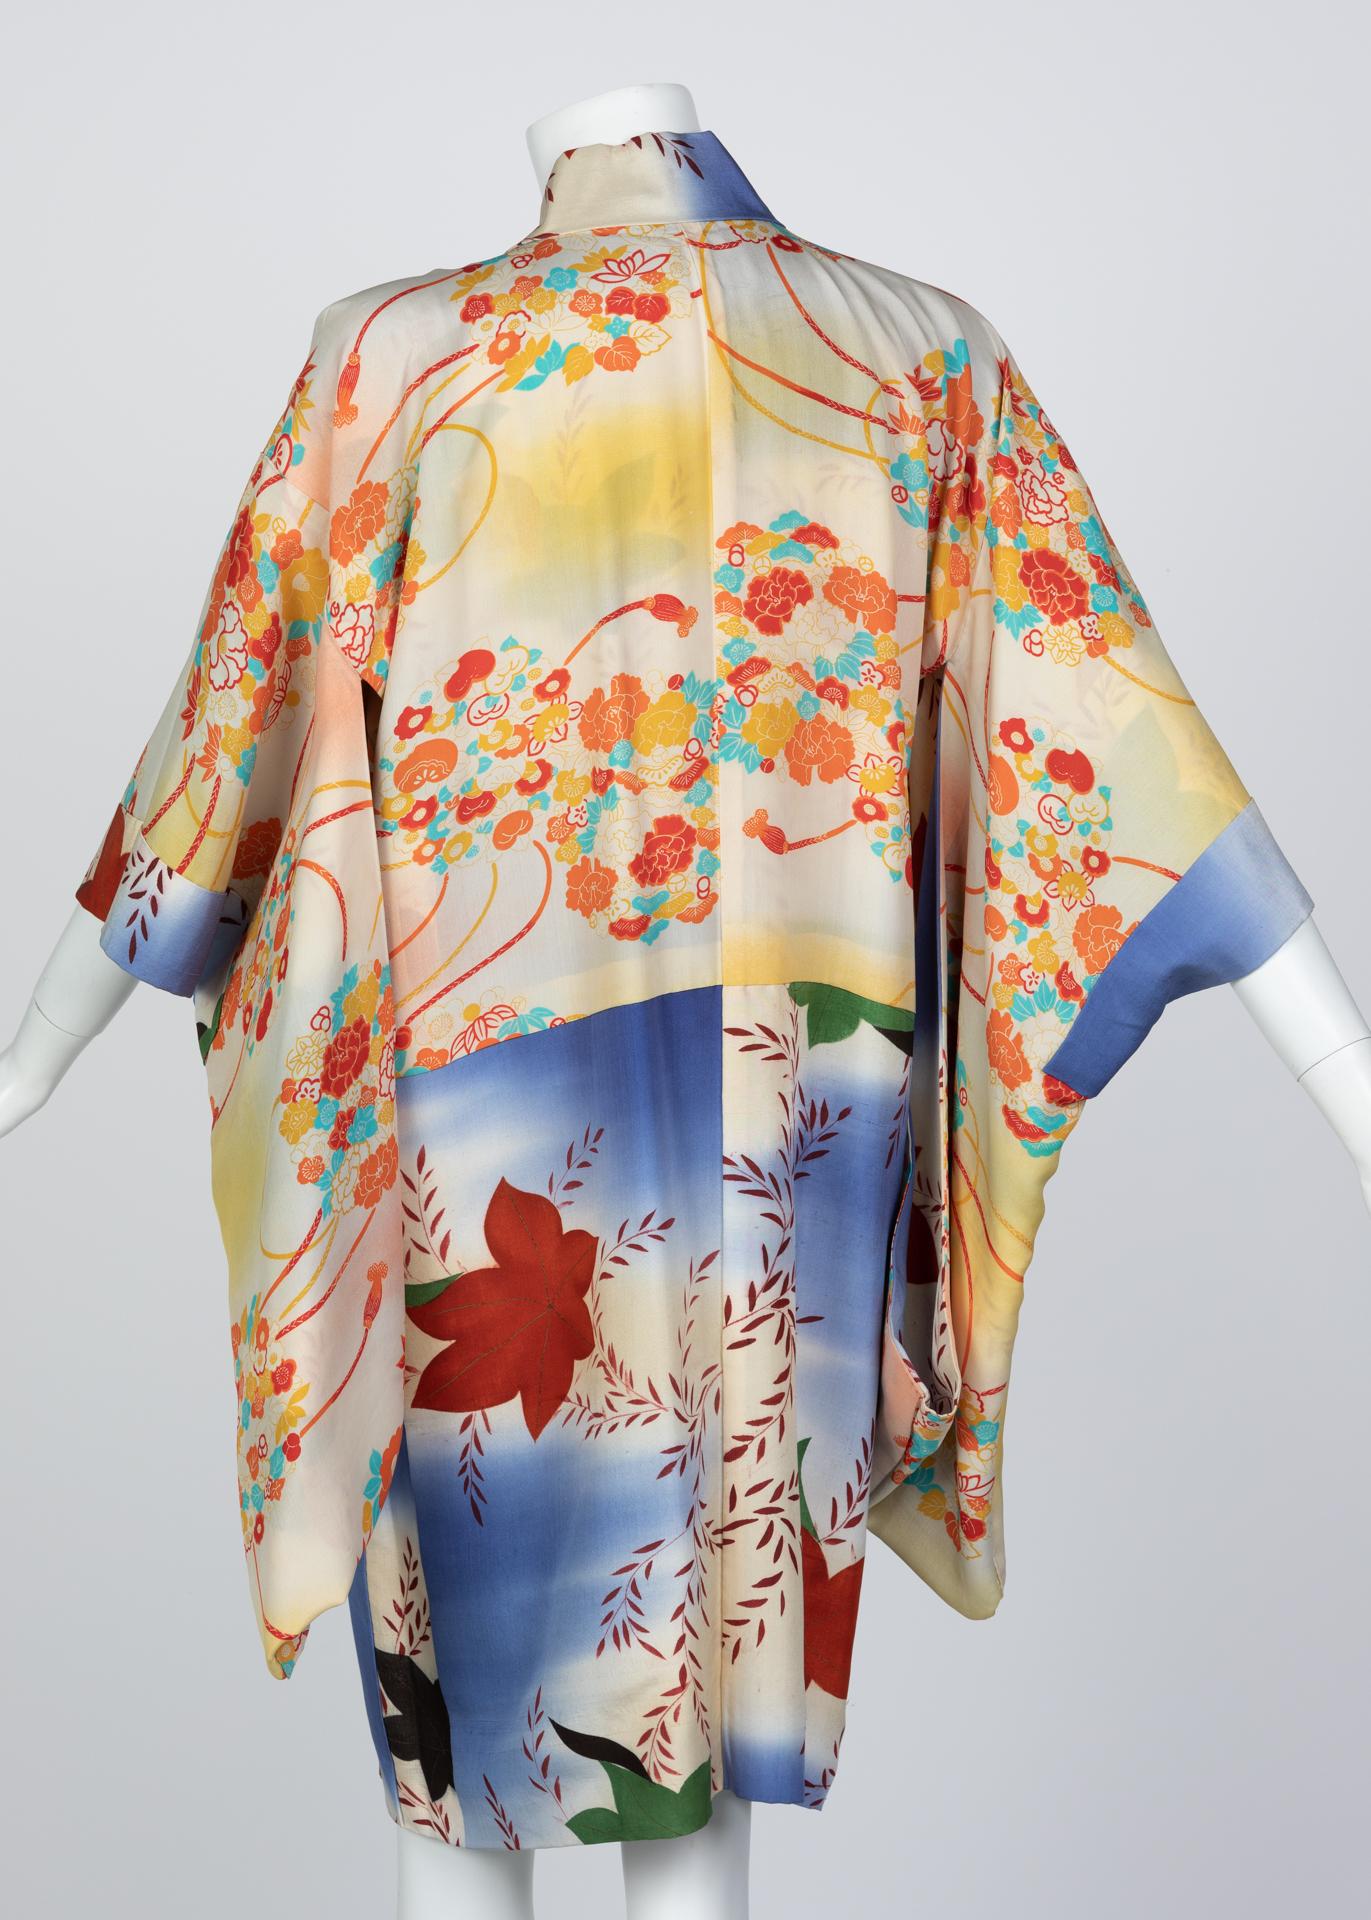 Der Kimono ist ein angesehenes und hochdekoriertes traditionelles Gewand aus Japan. Diese Roben haben viele westliche Designer inspiriert und wurden im Laufe der Zeit überarbeitet, um ein modernes Publikum anzusprechen, wobei viele der Stilelemente